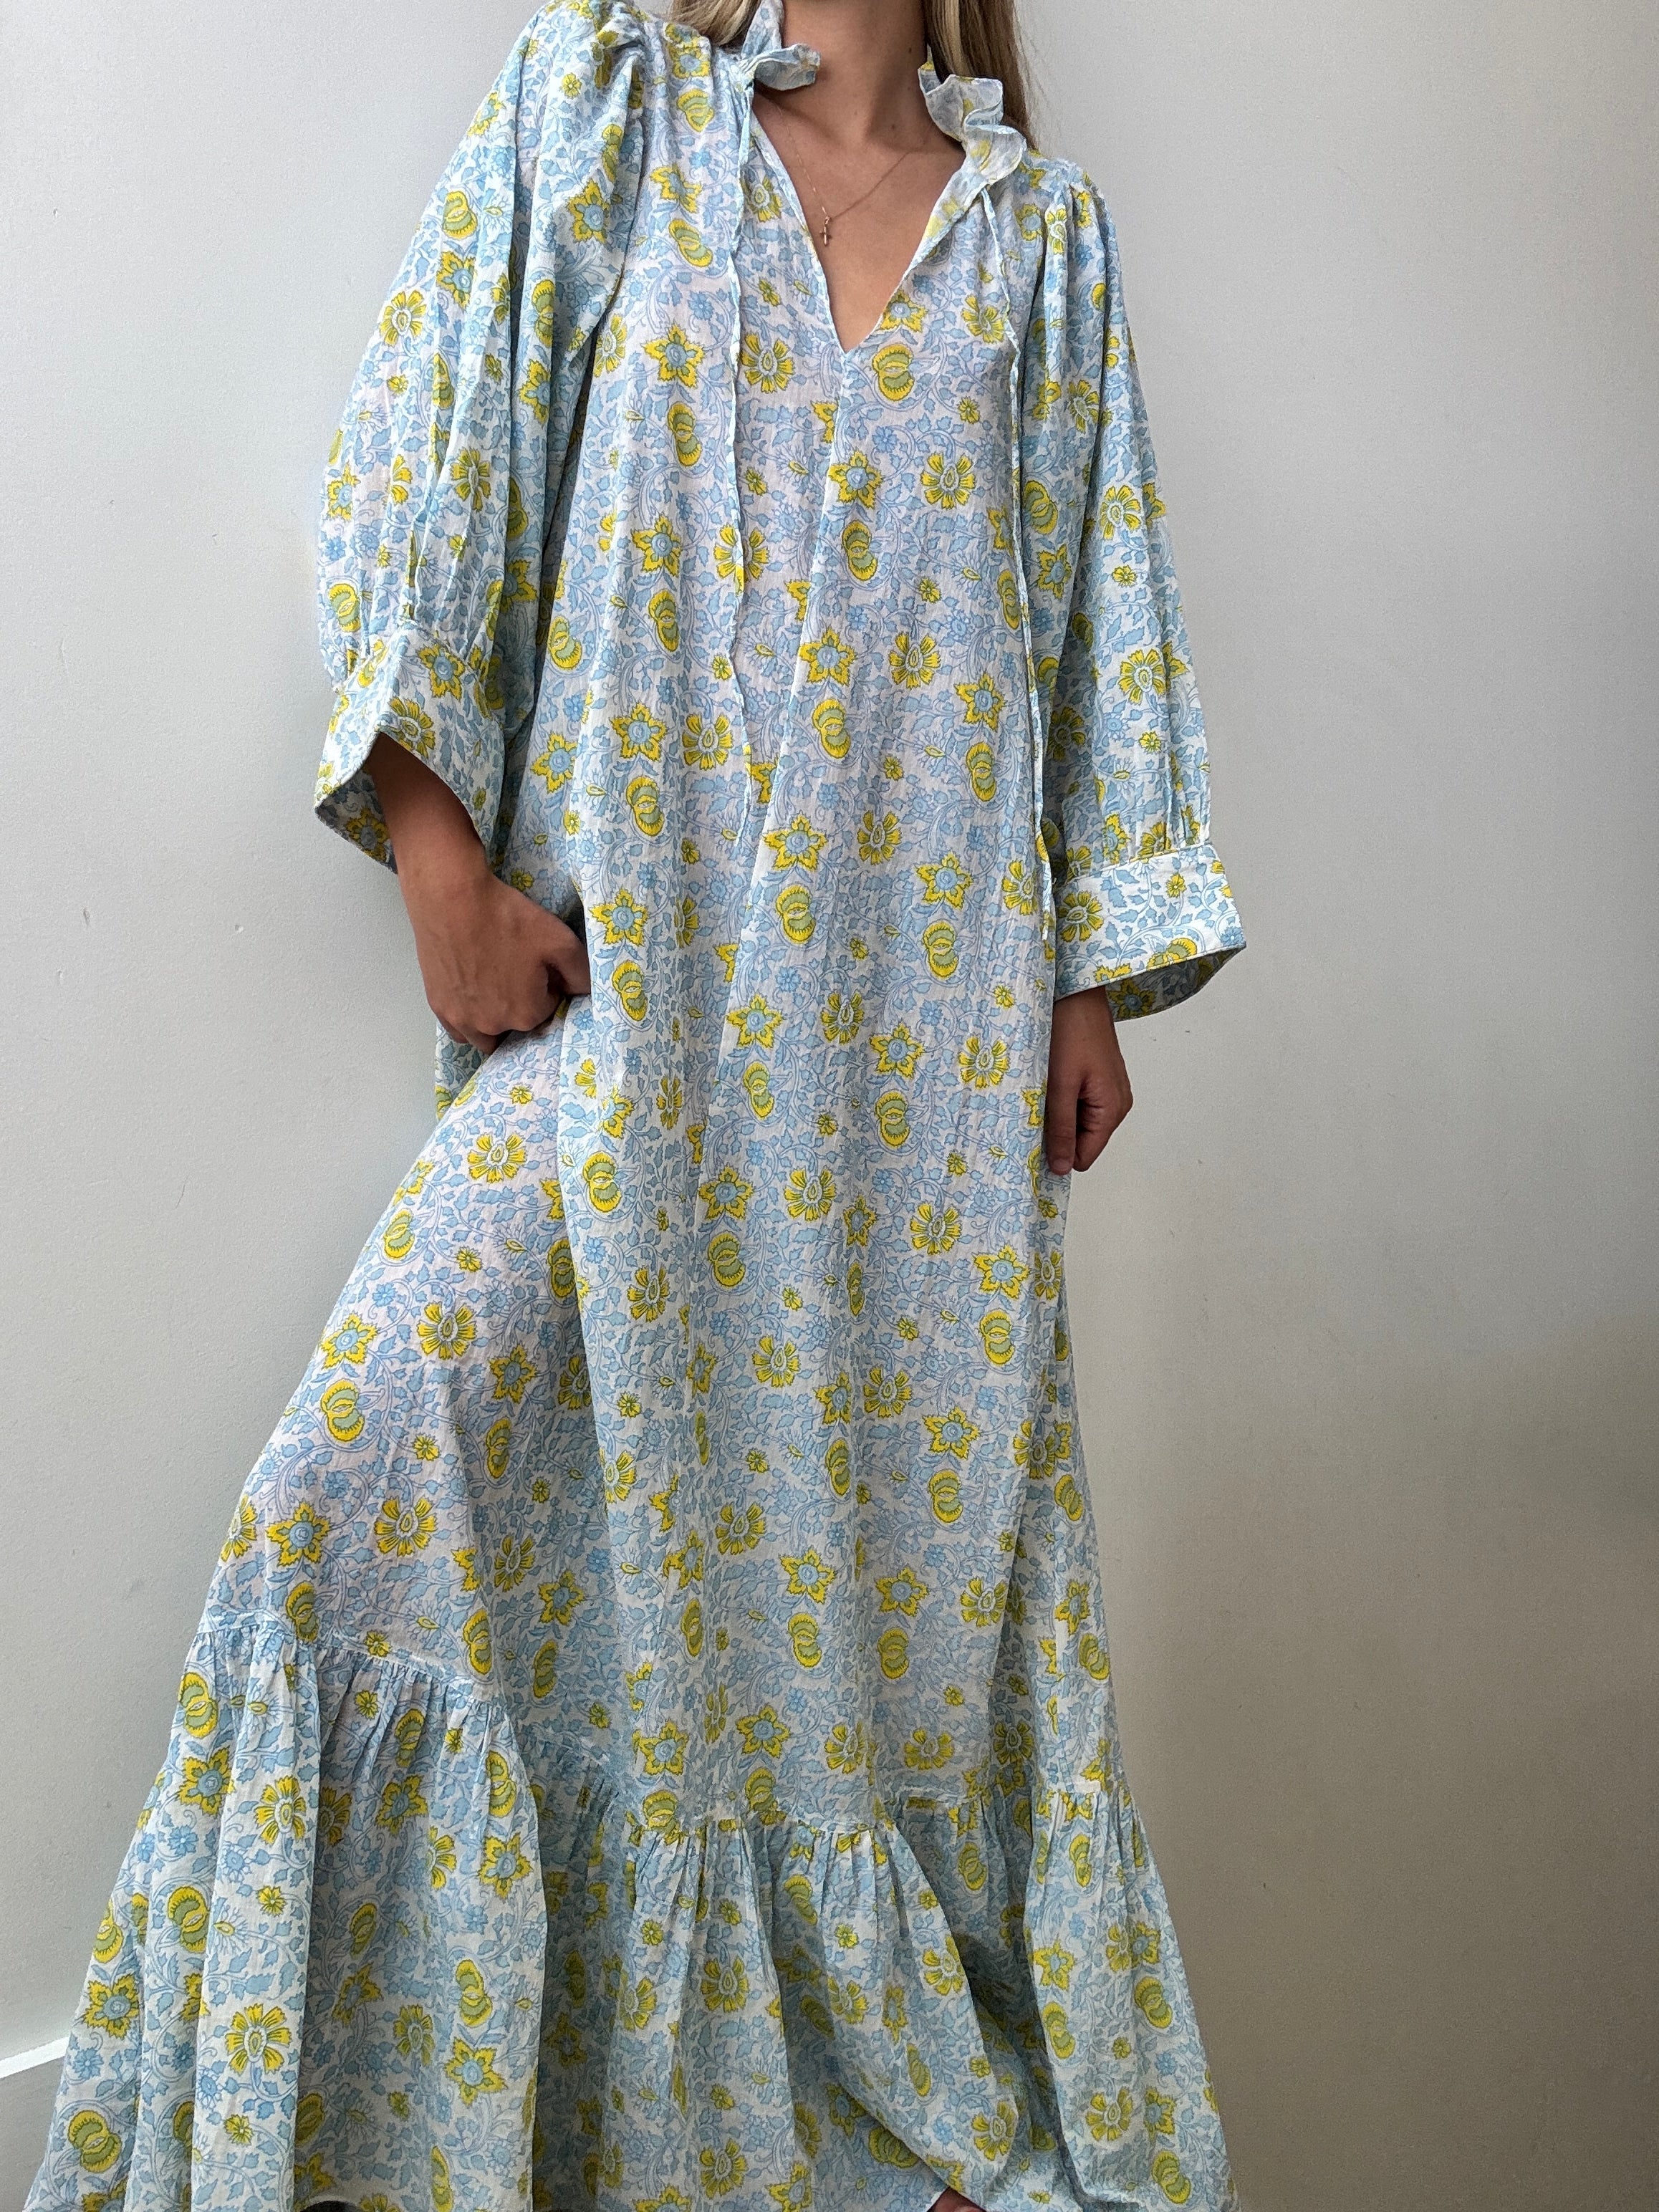 Evarae Dresses Medium Floral Maxi Dress With Sleeves